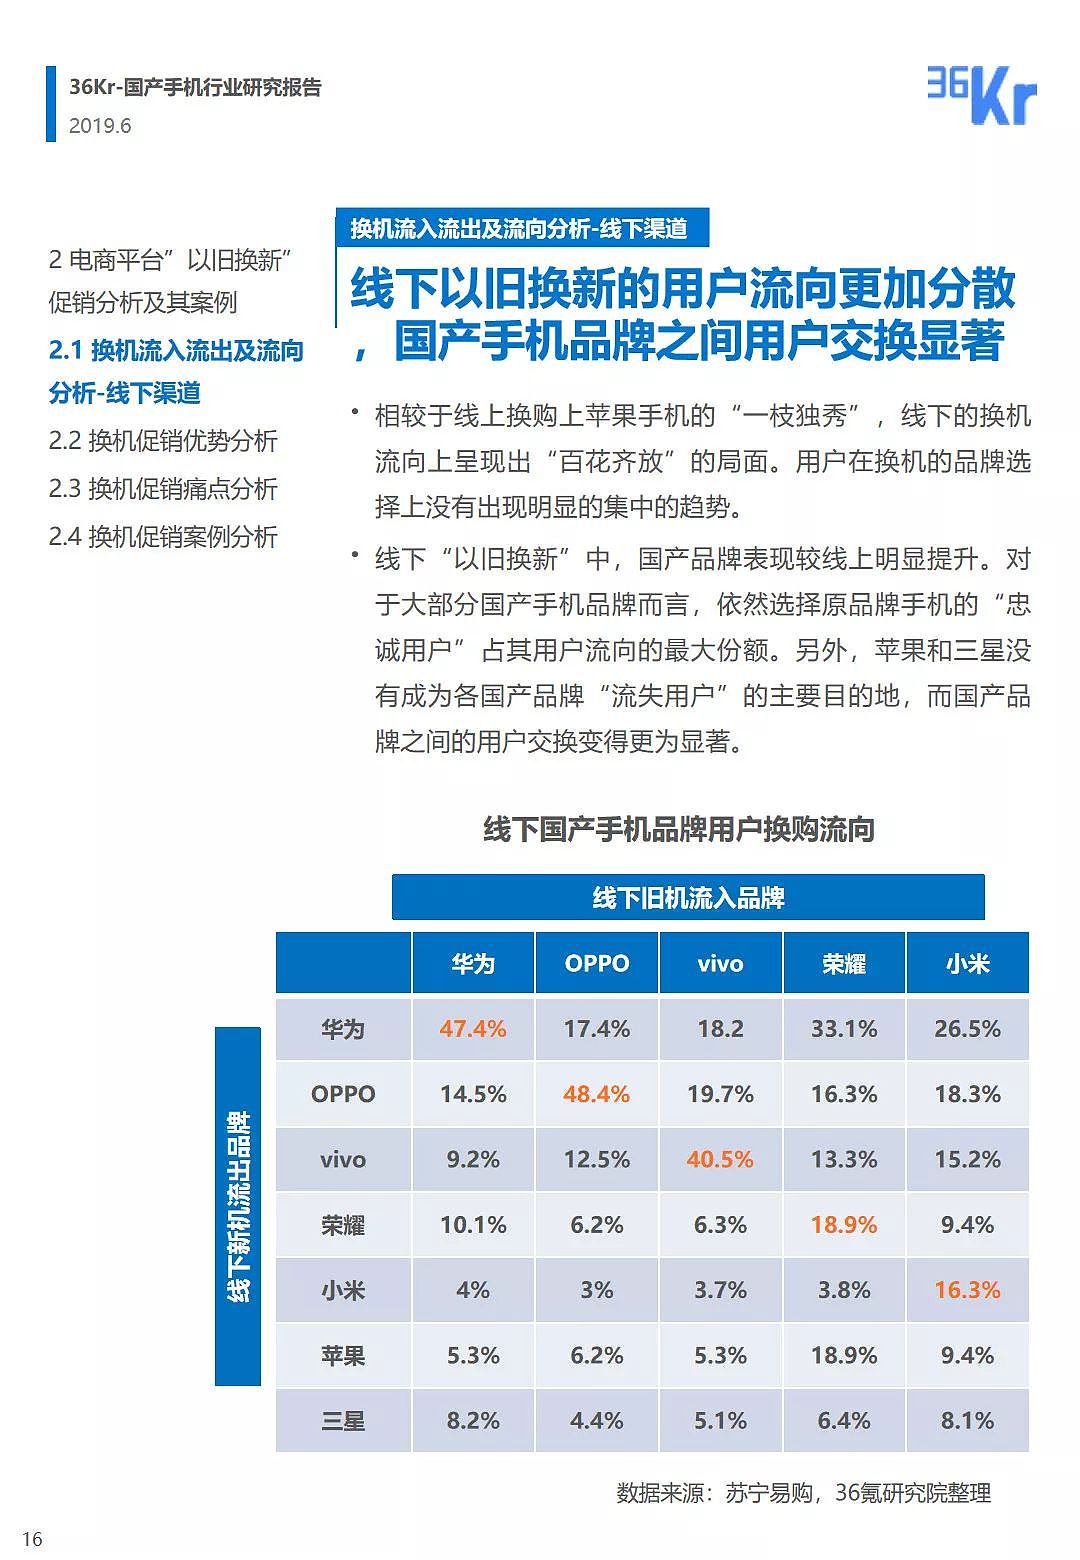 中国手机品牌市场营销研究报告 | 36氪研究 - 17